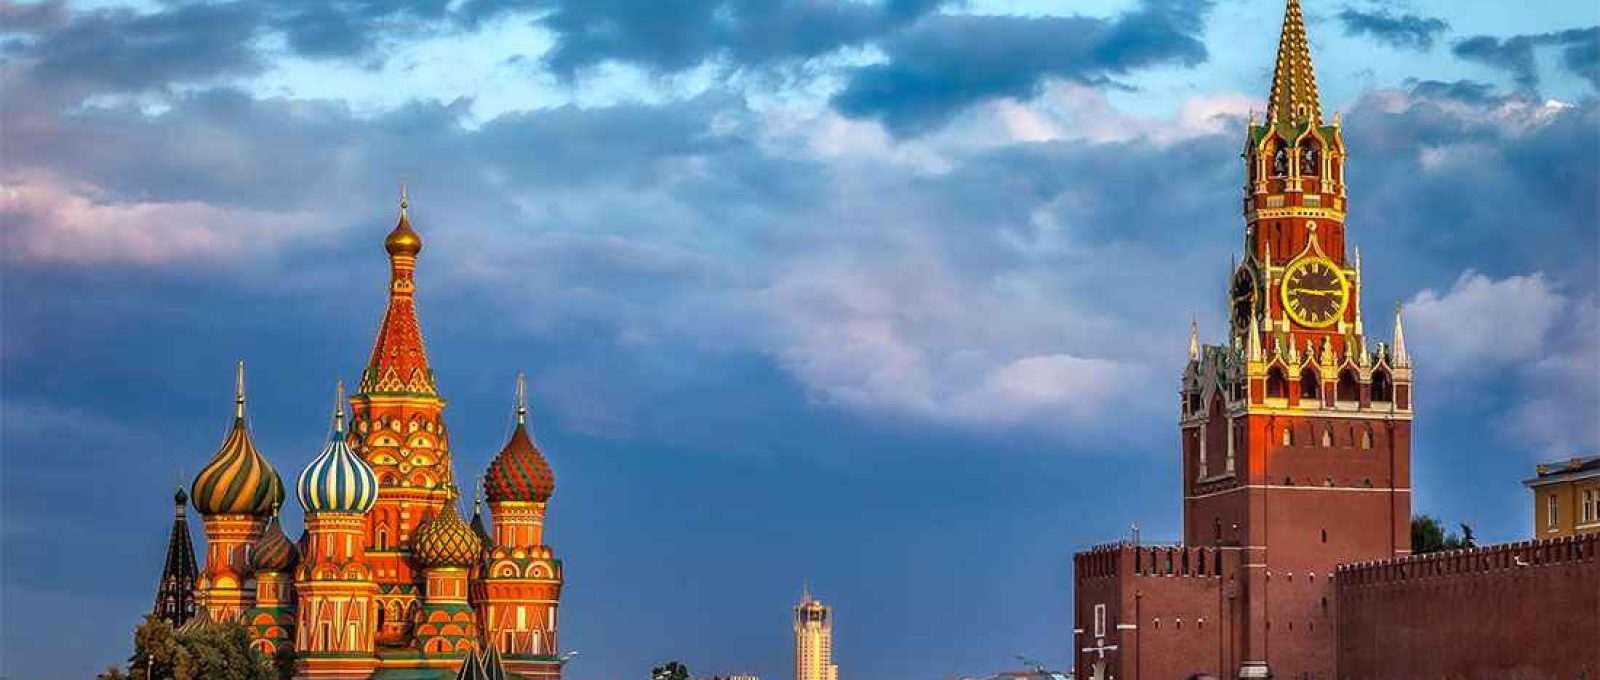 O Kremlin e a Catedral de São Basílio na Praça Vermelha, Moscou, Rússia (Travel Photography Guru).